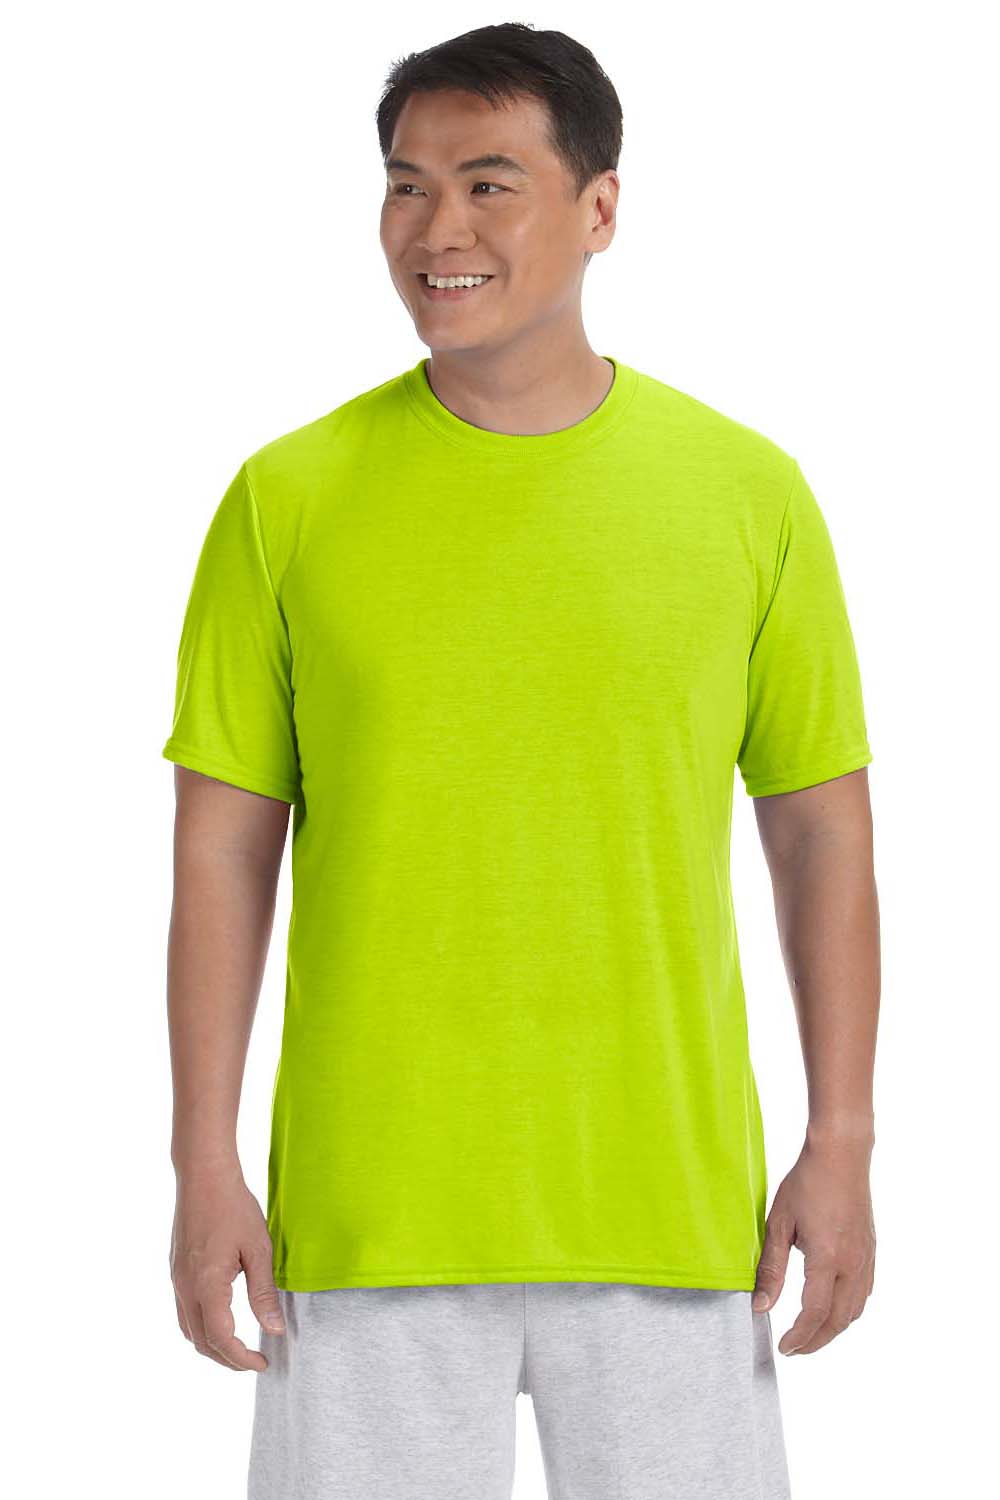 Gildan G420 Mens Performance Jersey Moisture Wicking Short Sleeve Crewneck T-Shirt Safety Green Front